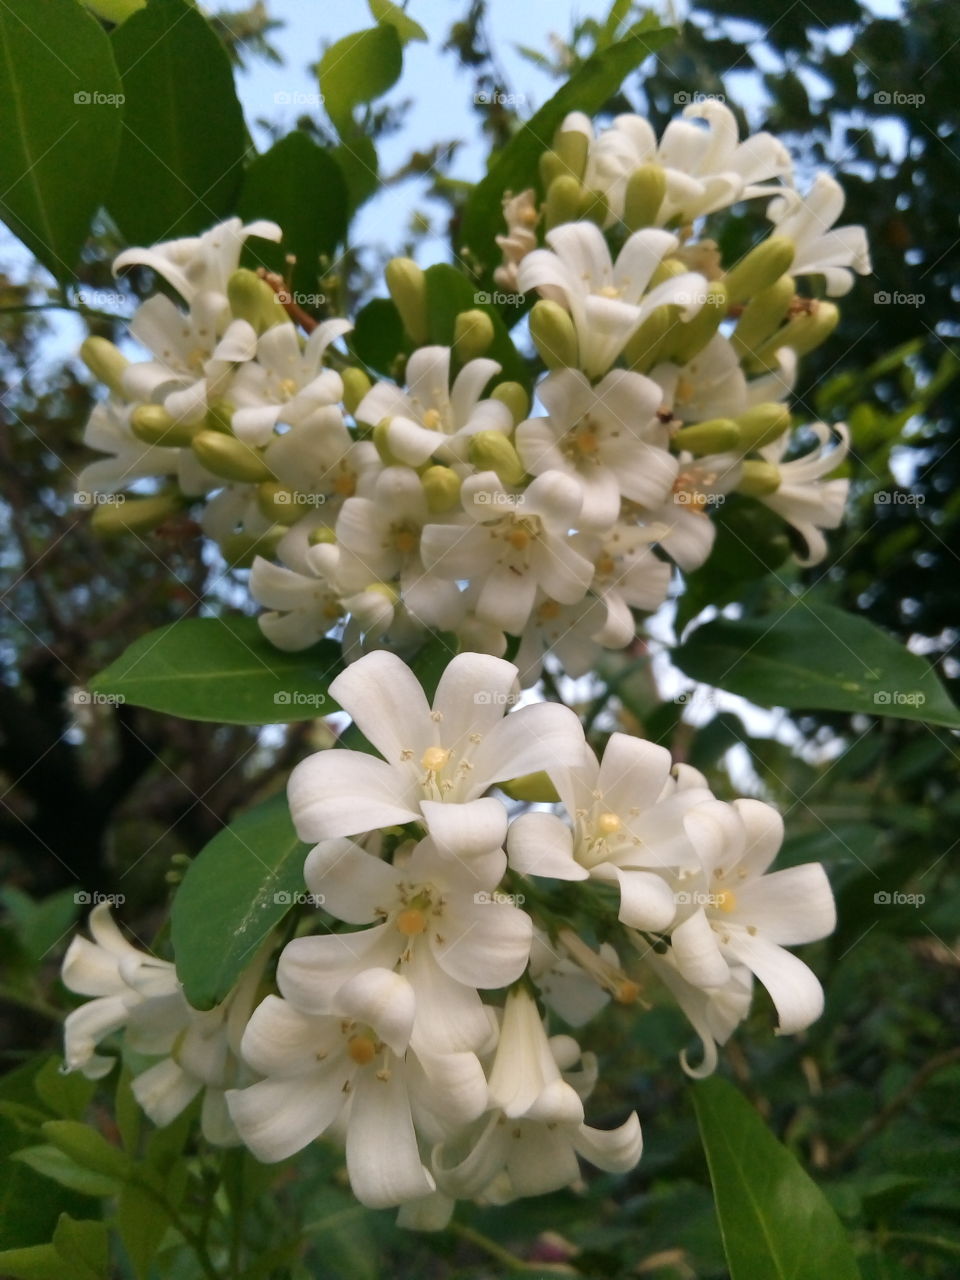 shade of white

flowet

Murraya paniculata
Fragrant